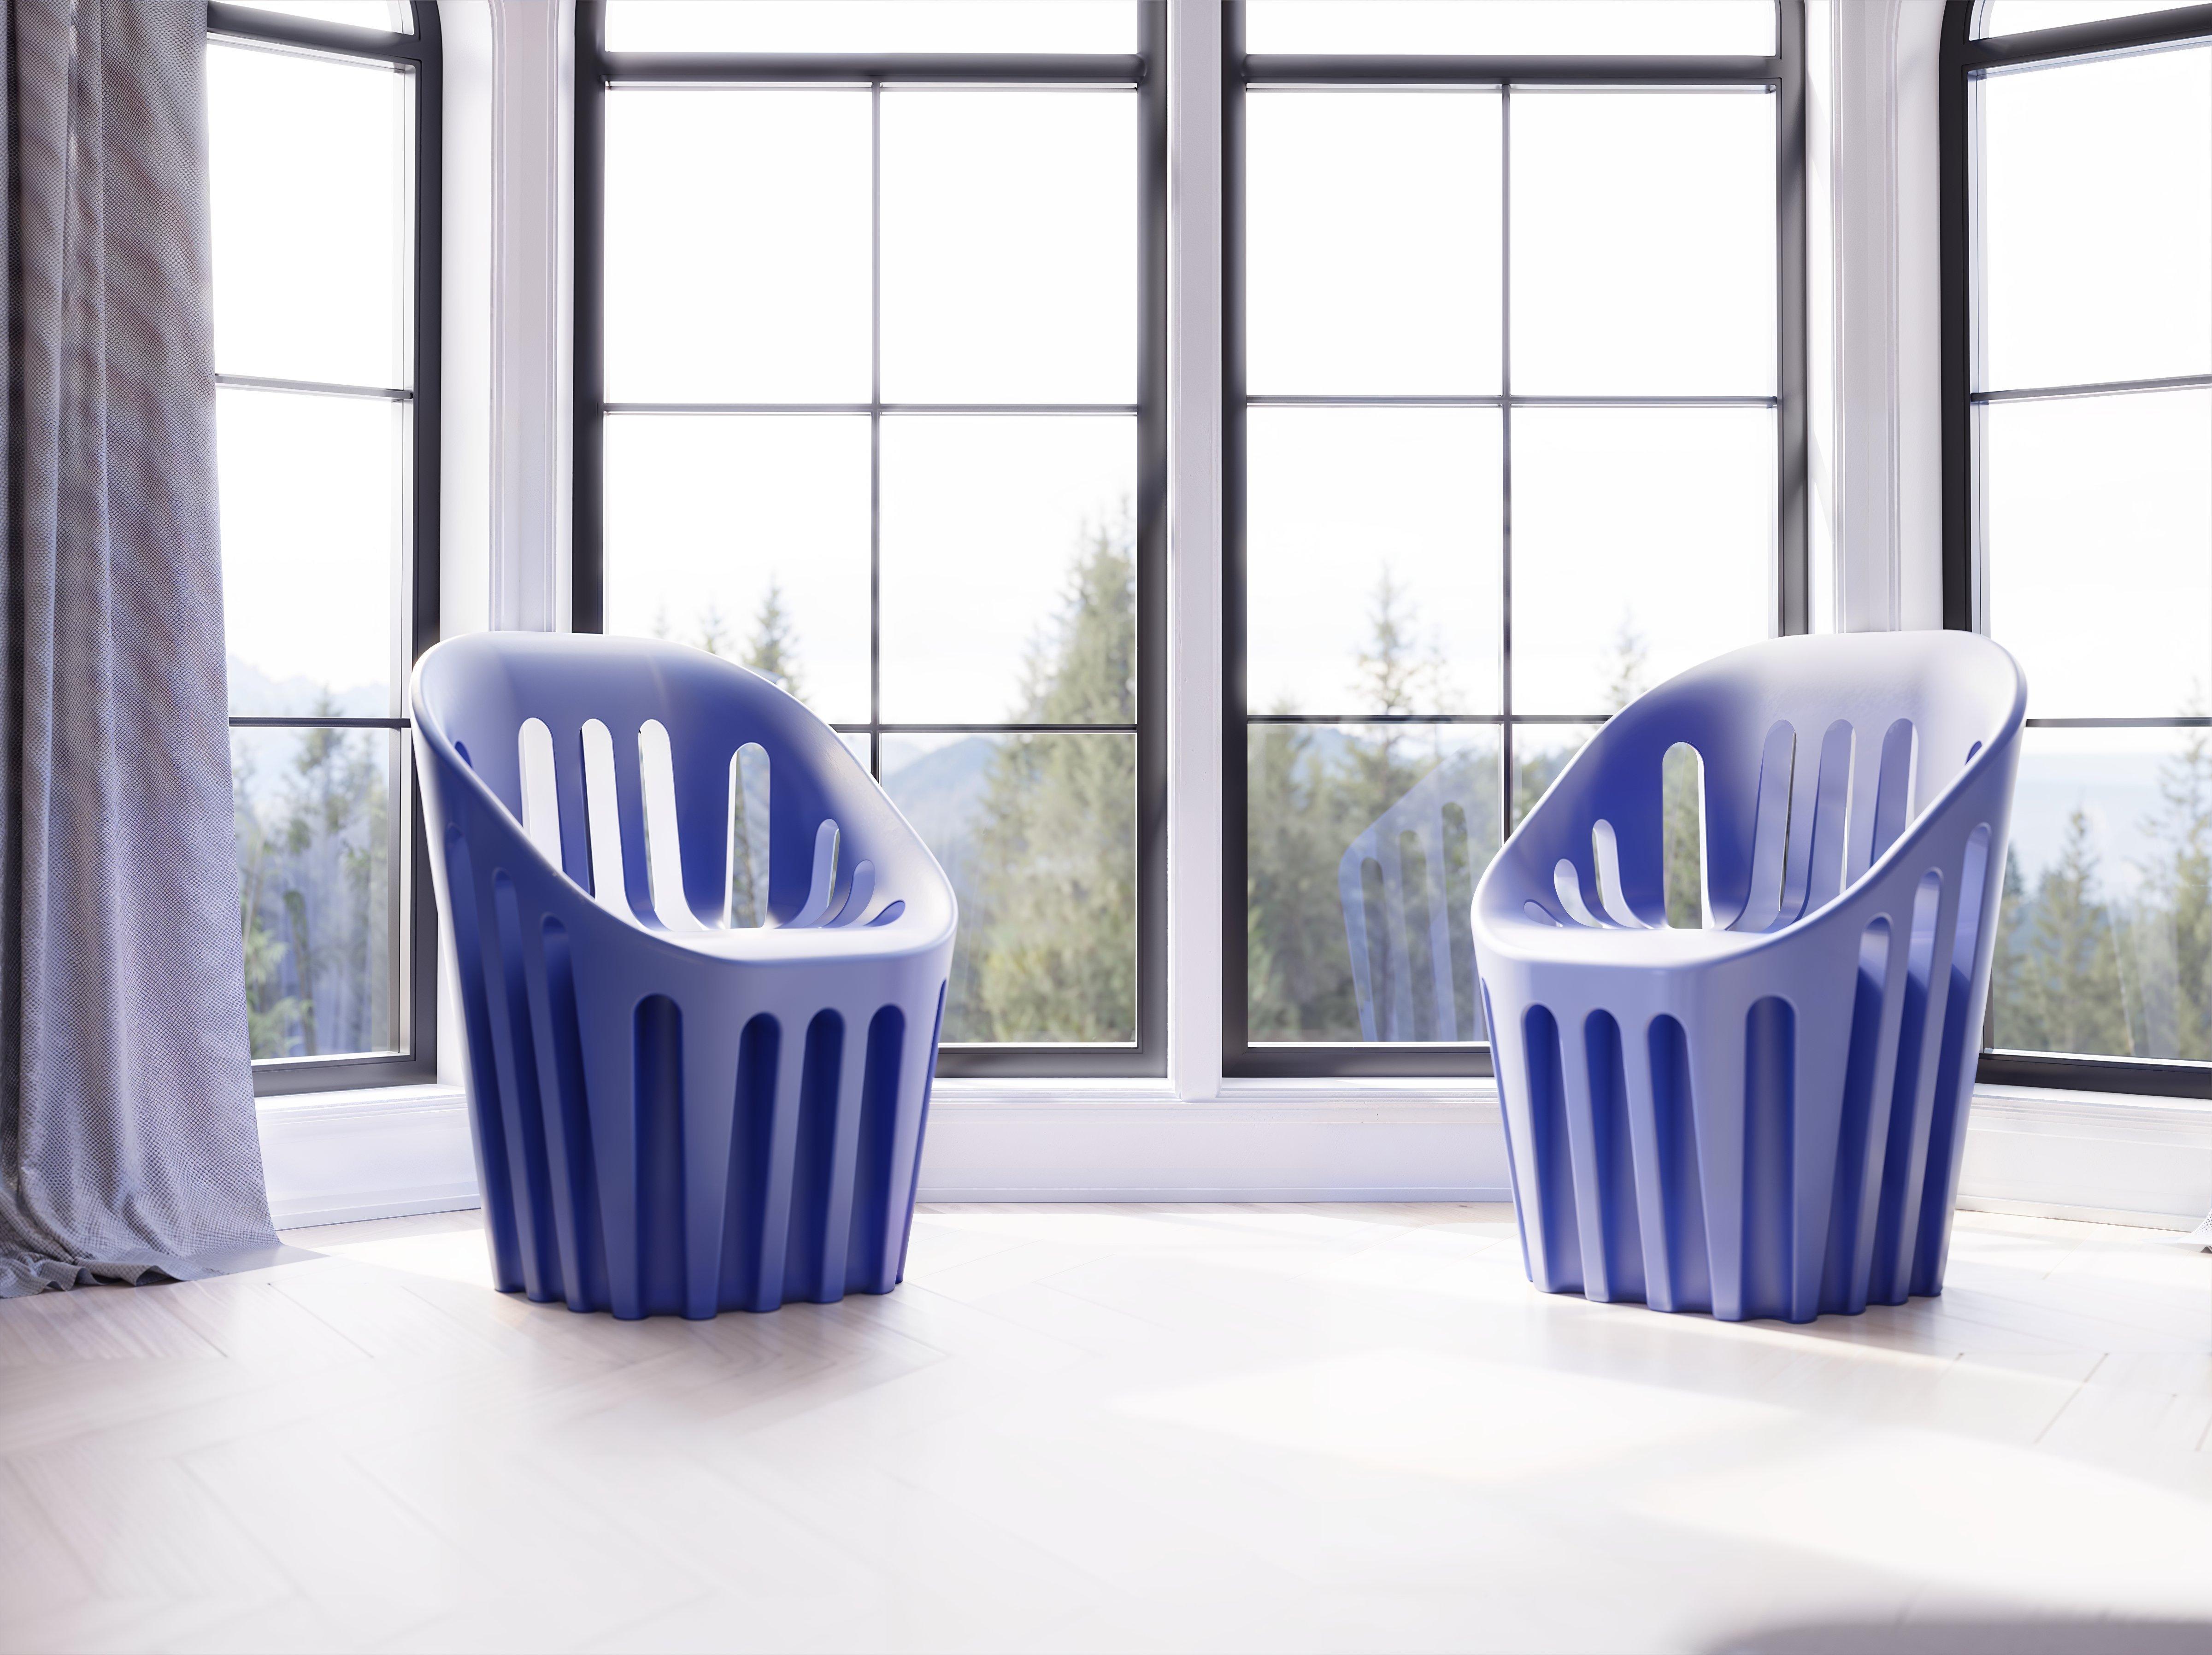 Safrangelber Coliseum-Stuhl von Alvaro Uribe
Abmessungen: T 65 x B 66 x H 86 cm. Sitzhöhe: 45 cm.
MATERIALEN: Polyethylen.
Gewicht: 11 kg.

Erhältlich in verschiedenen Farbvarianten. Dieses Produkt ist für die Verwendung im Innen- und Außenbereich